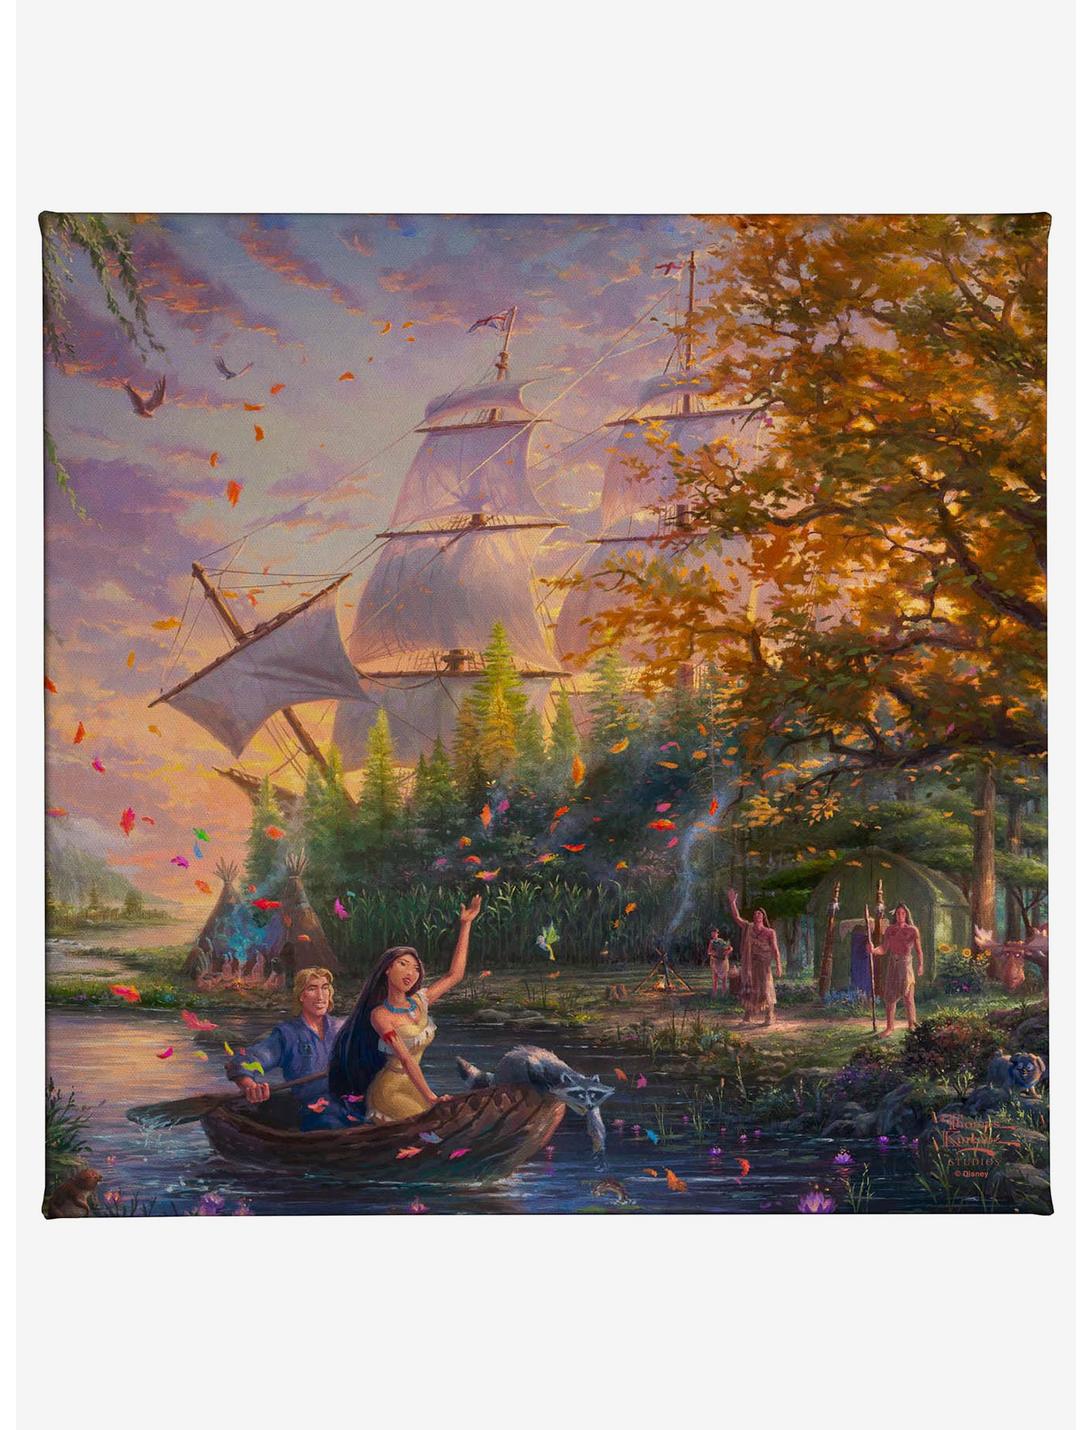 Disney Pocahontas Gallery Wrapped Canvas, , hi-res